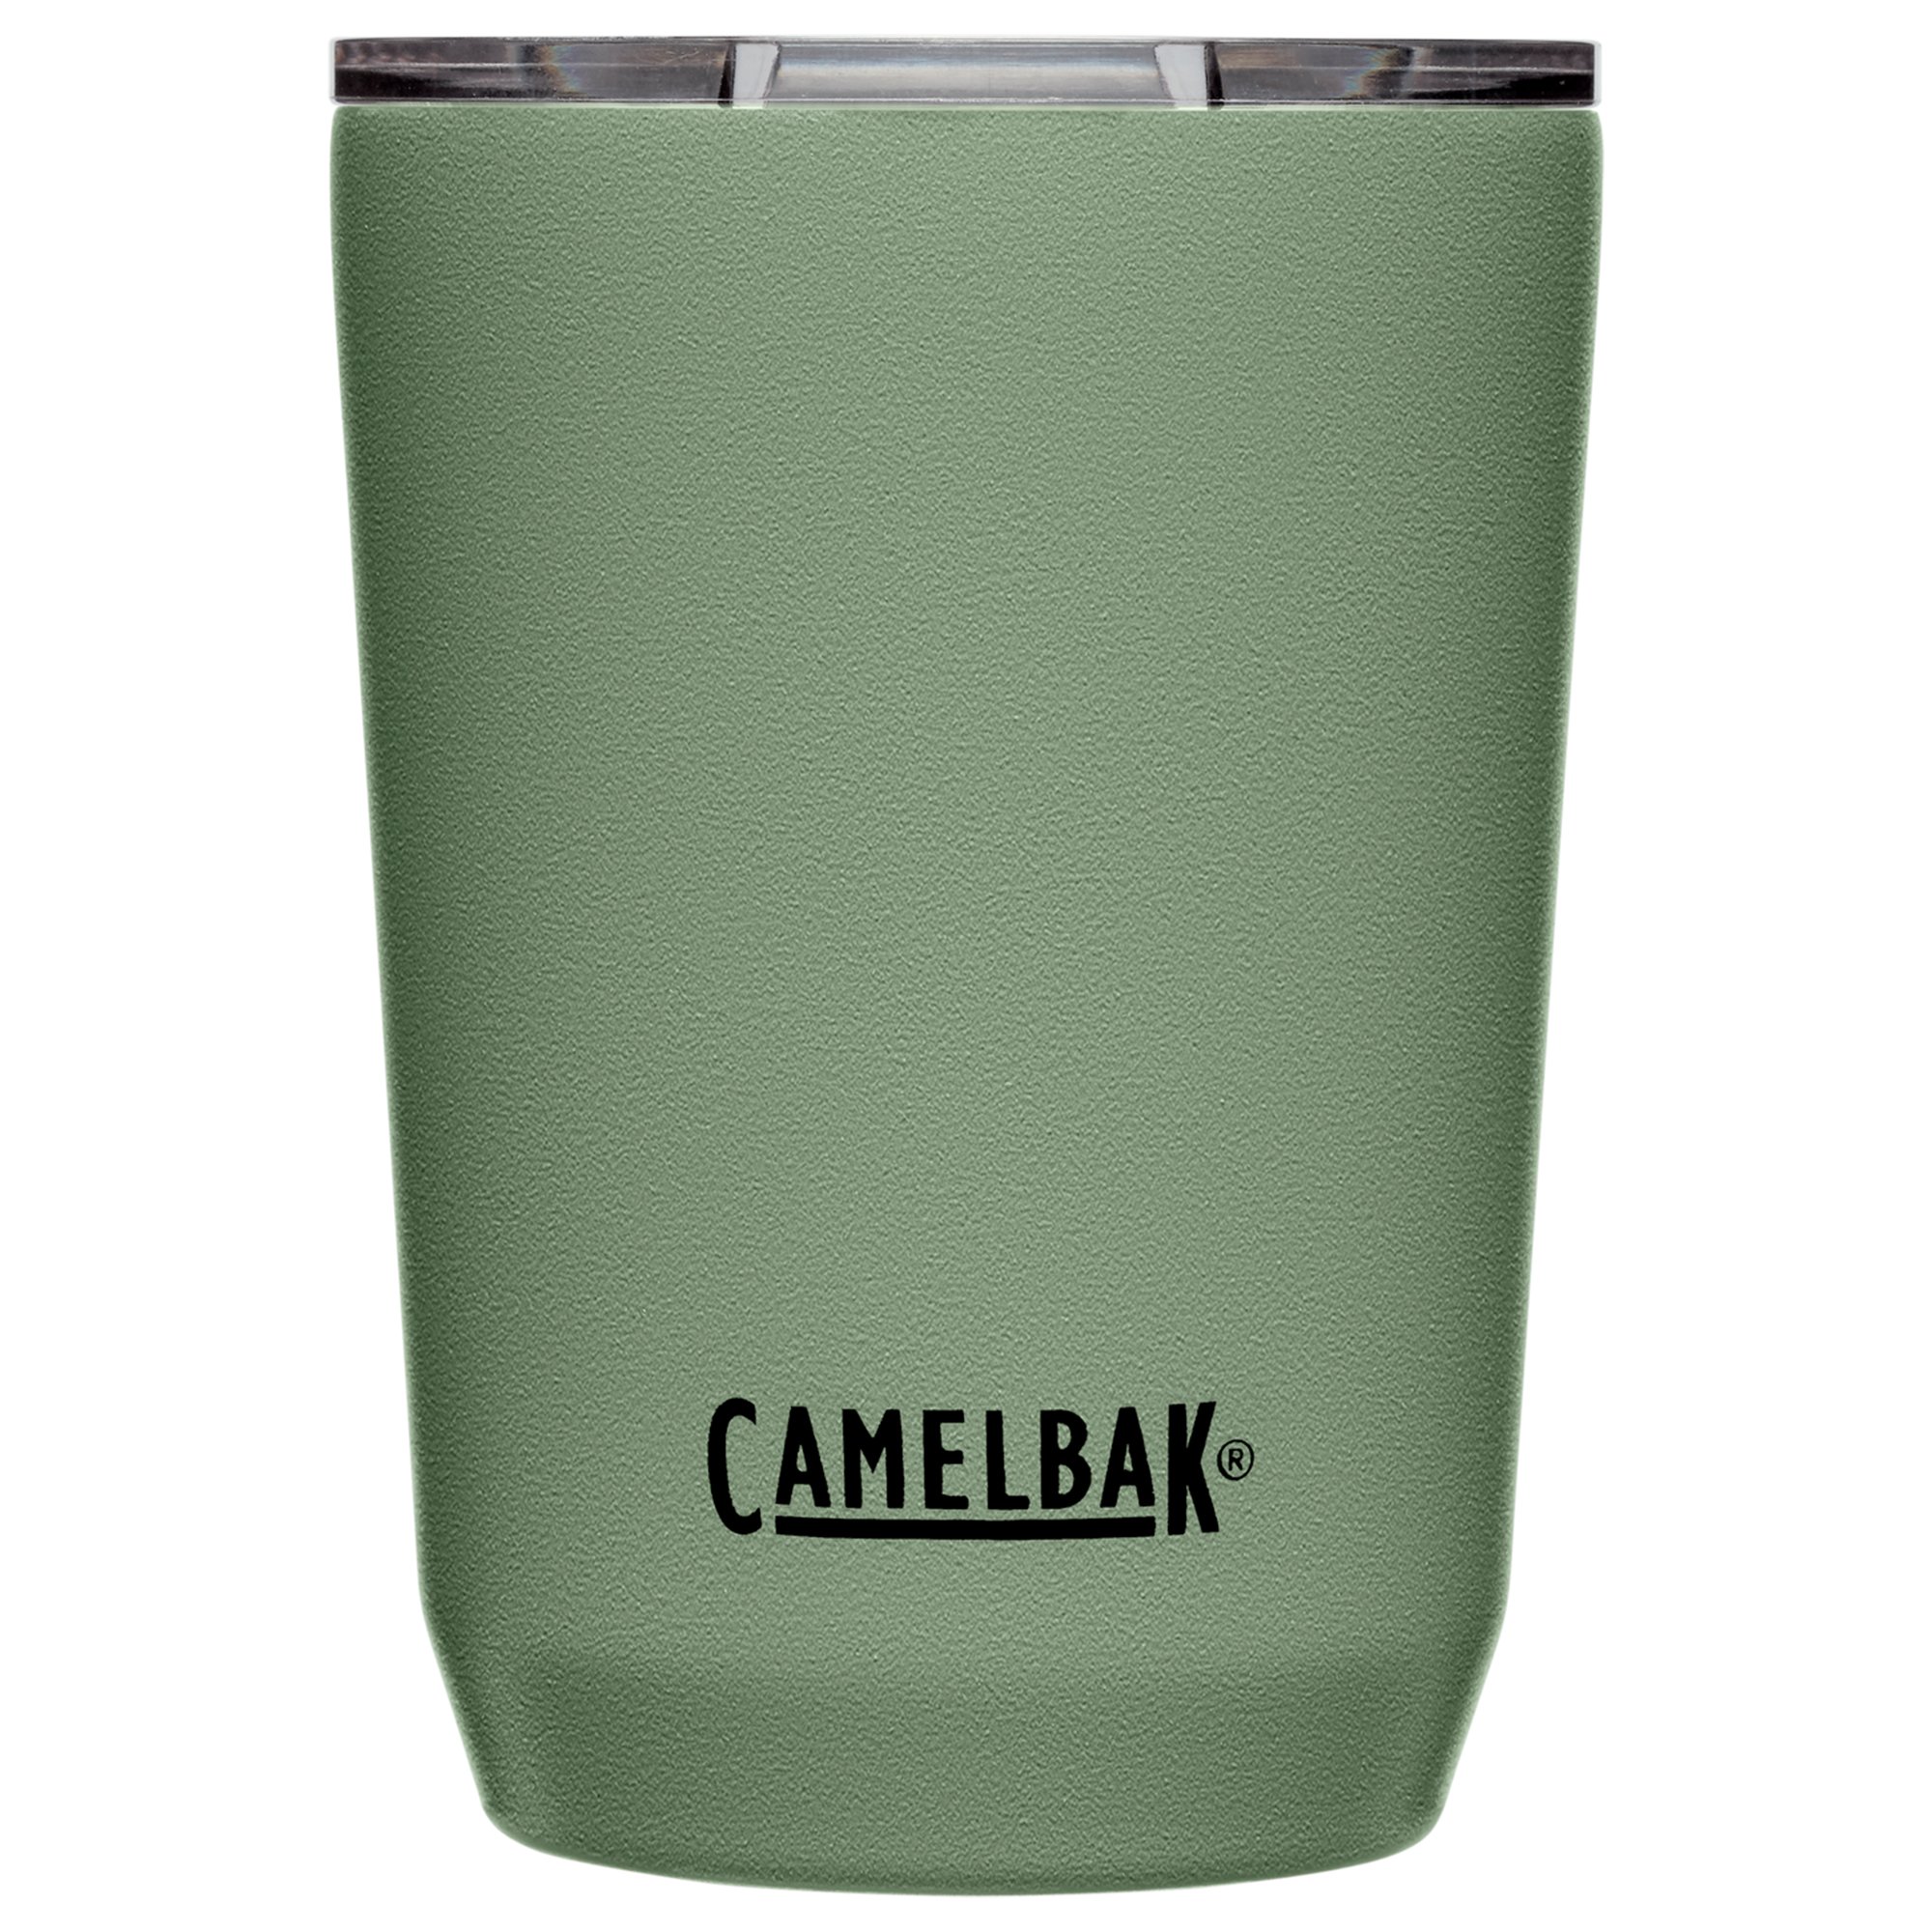 Camelbak Tumbler termokrus 0.35 liter moss